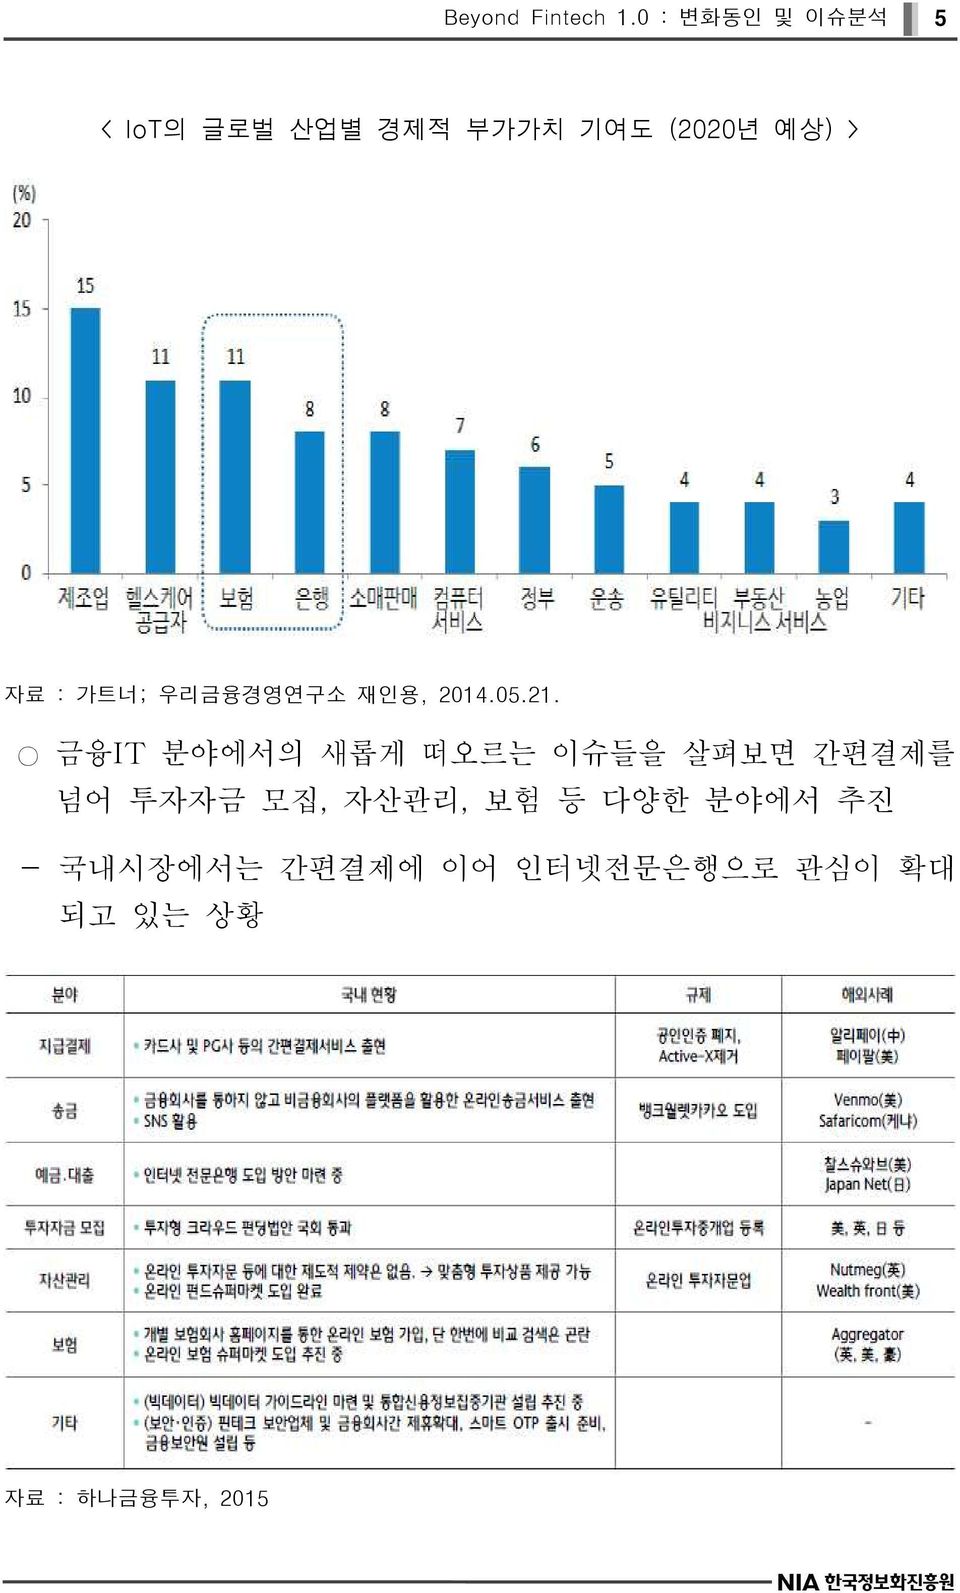 : 가트너; 우리금융경영연구소 재인용, 2014.05.21.